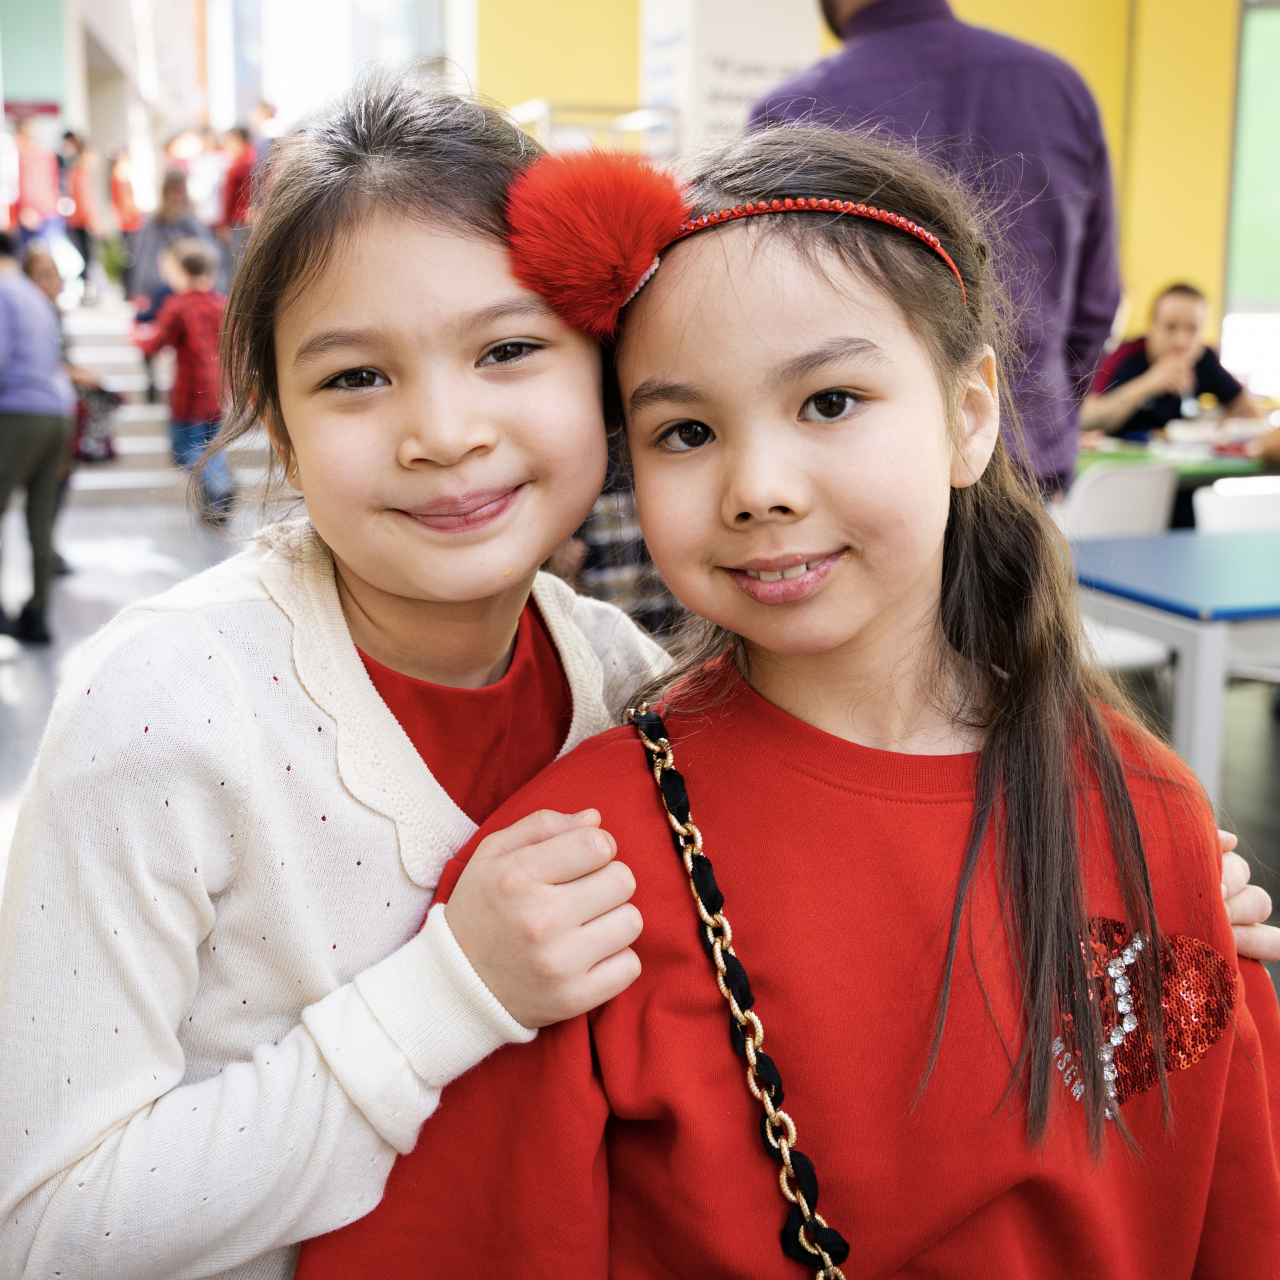 Сообщество Haileybury Almaty собрало 2,2 миллиона тенге на благотворительность